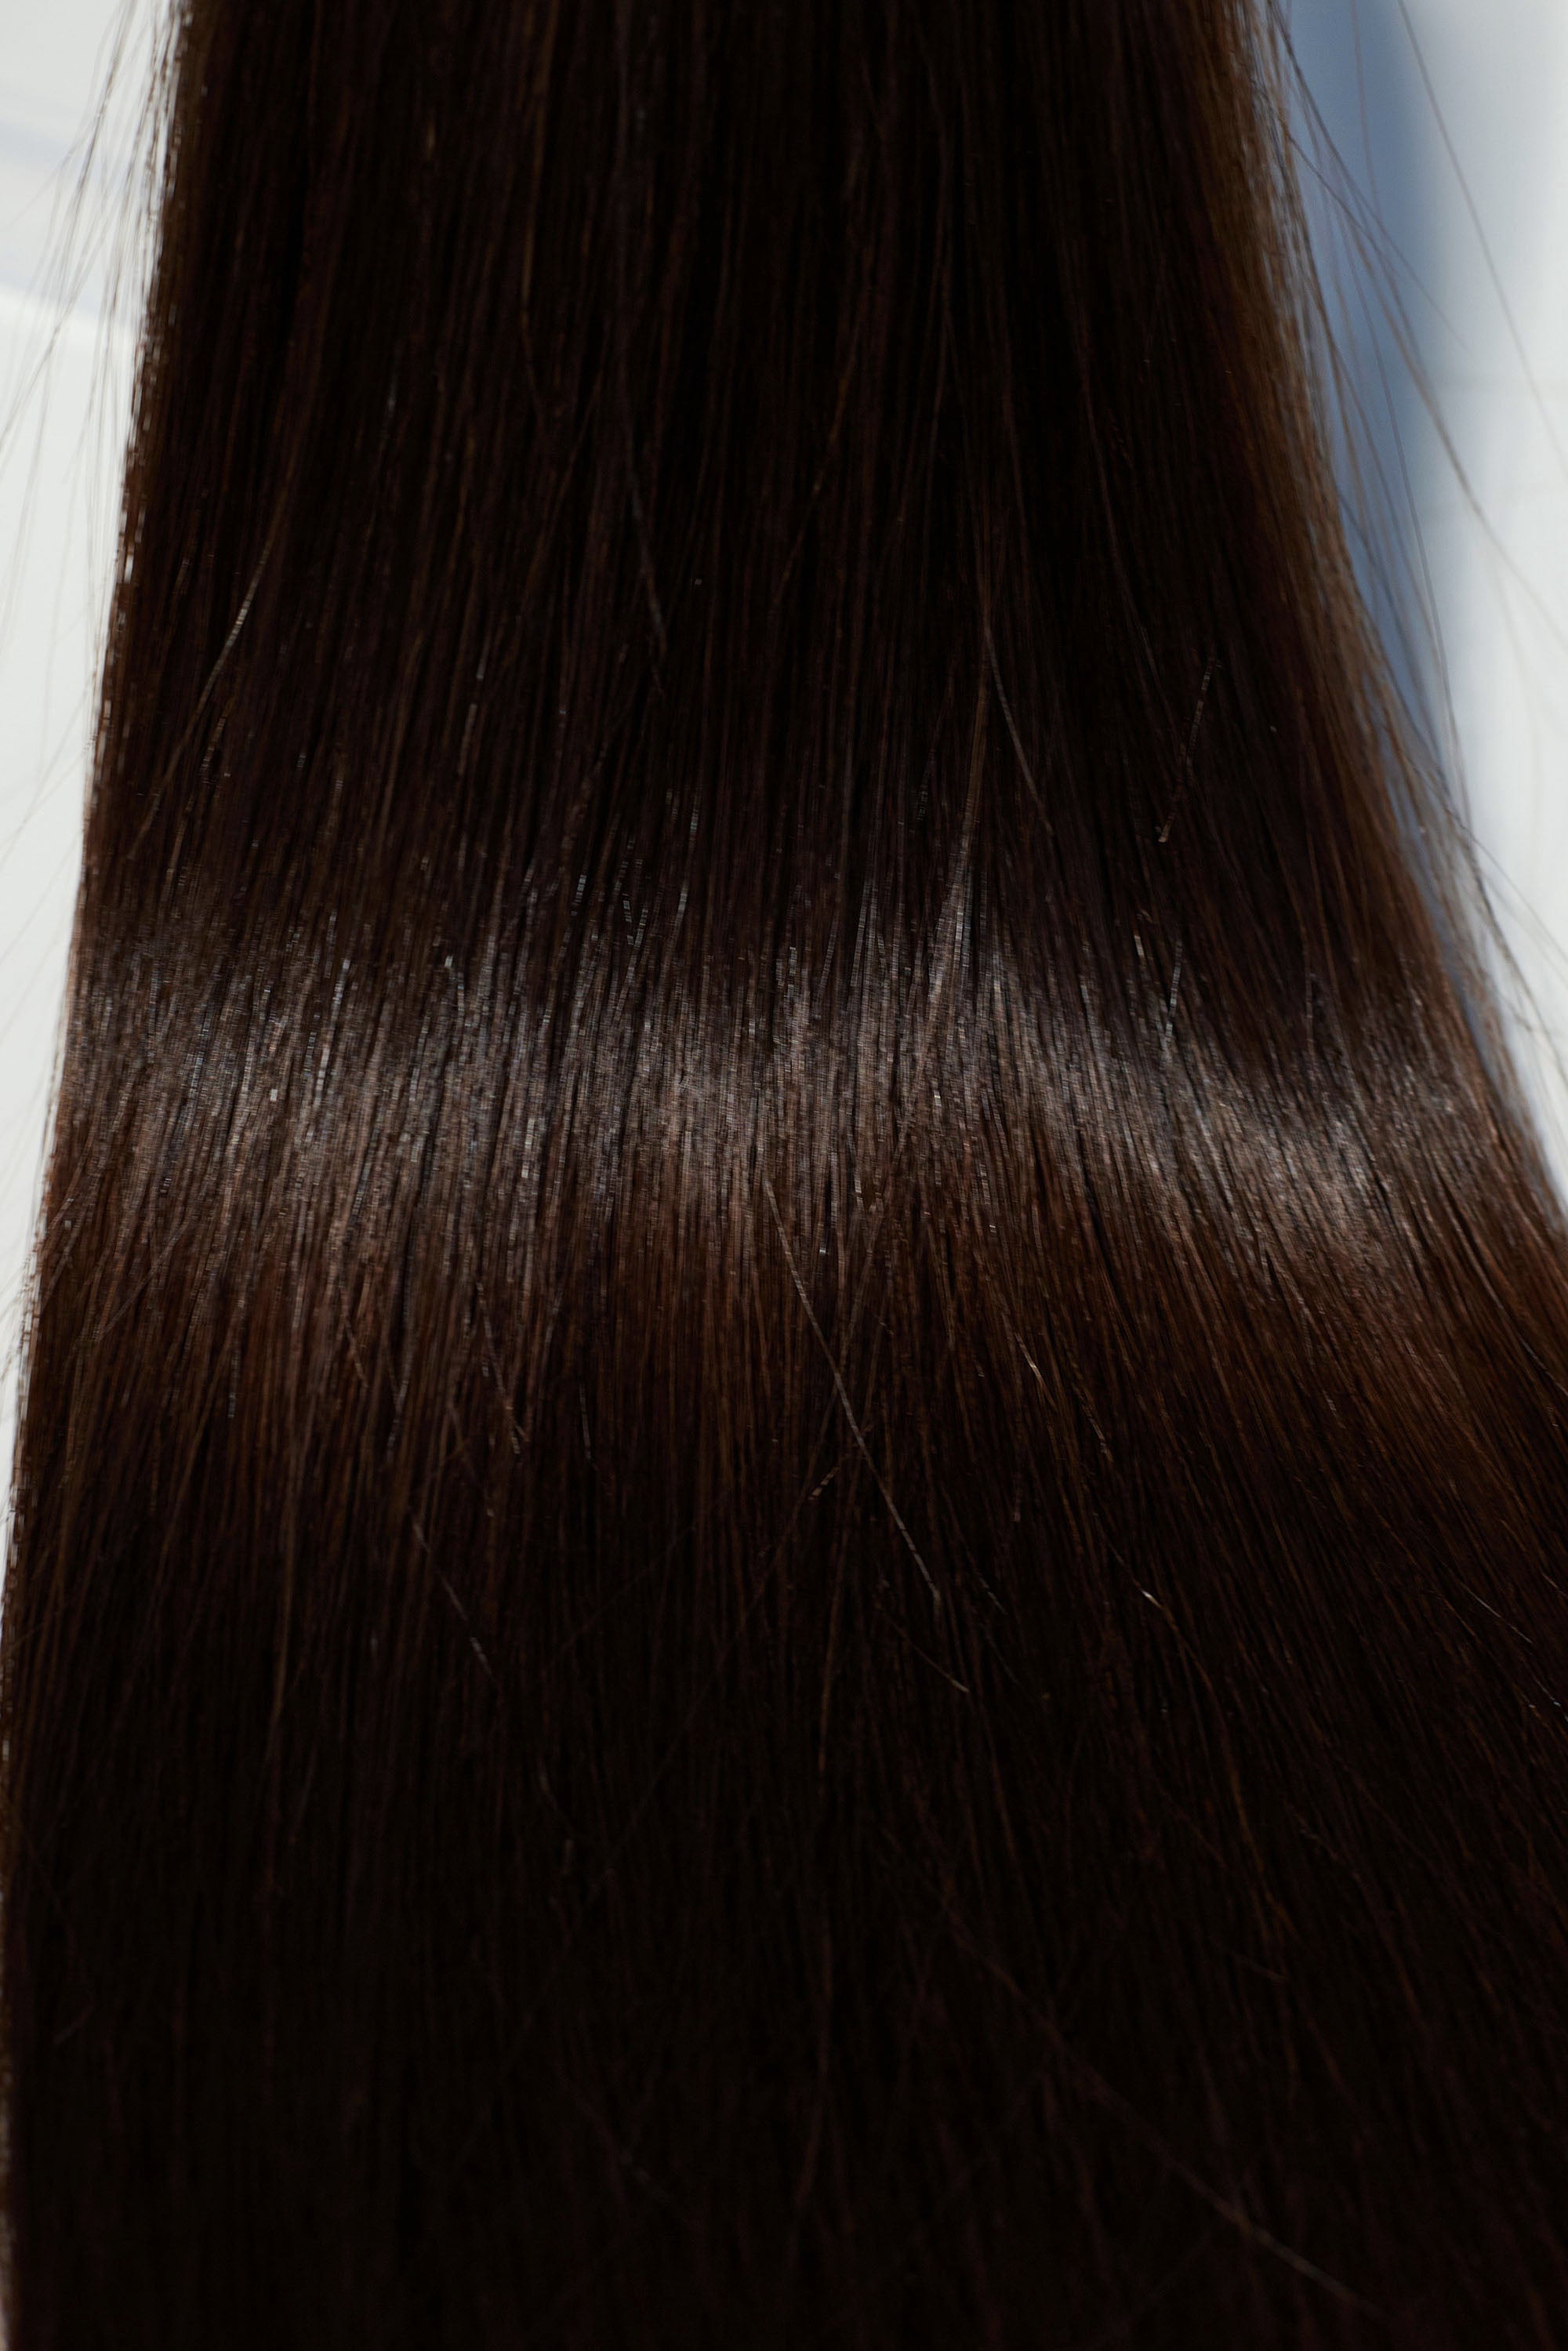 Behair professional Keratin Tip "Premium" 16" (40cm) Natural Straight Dark Coffee Brown #2 - 25g (Micro - 0.5g each pcs) hair extensions